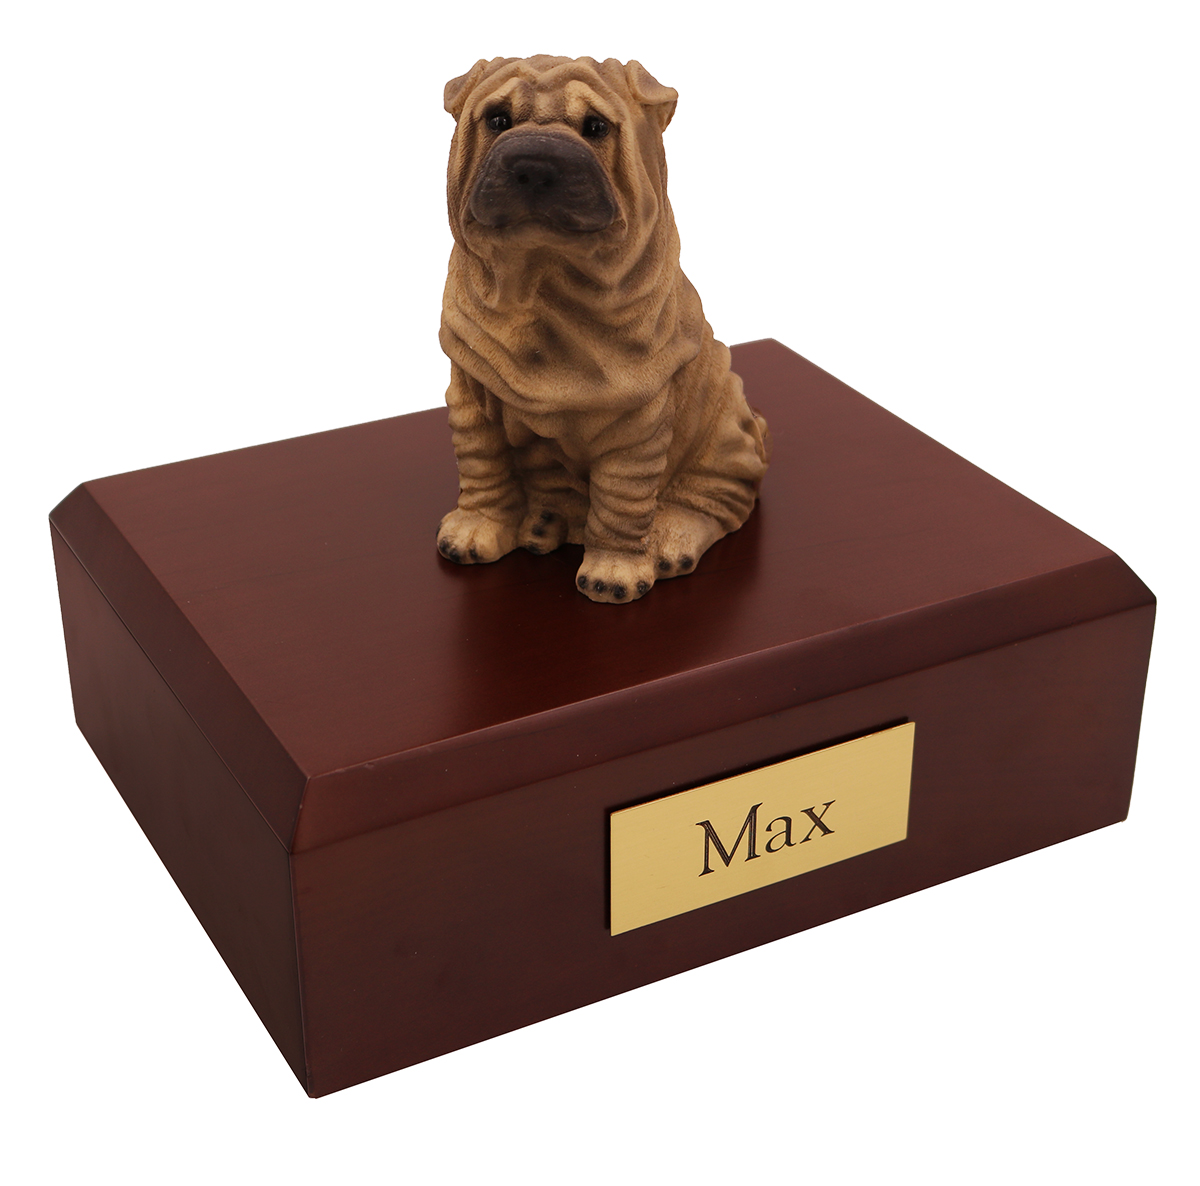 Dog, Shar Peis - Figurine Urn